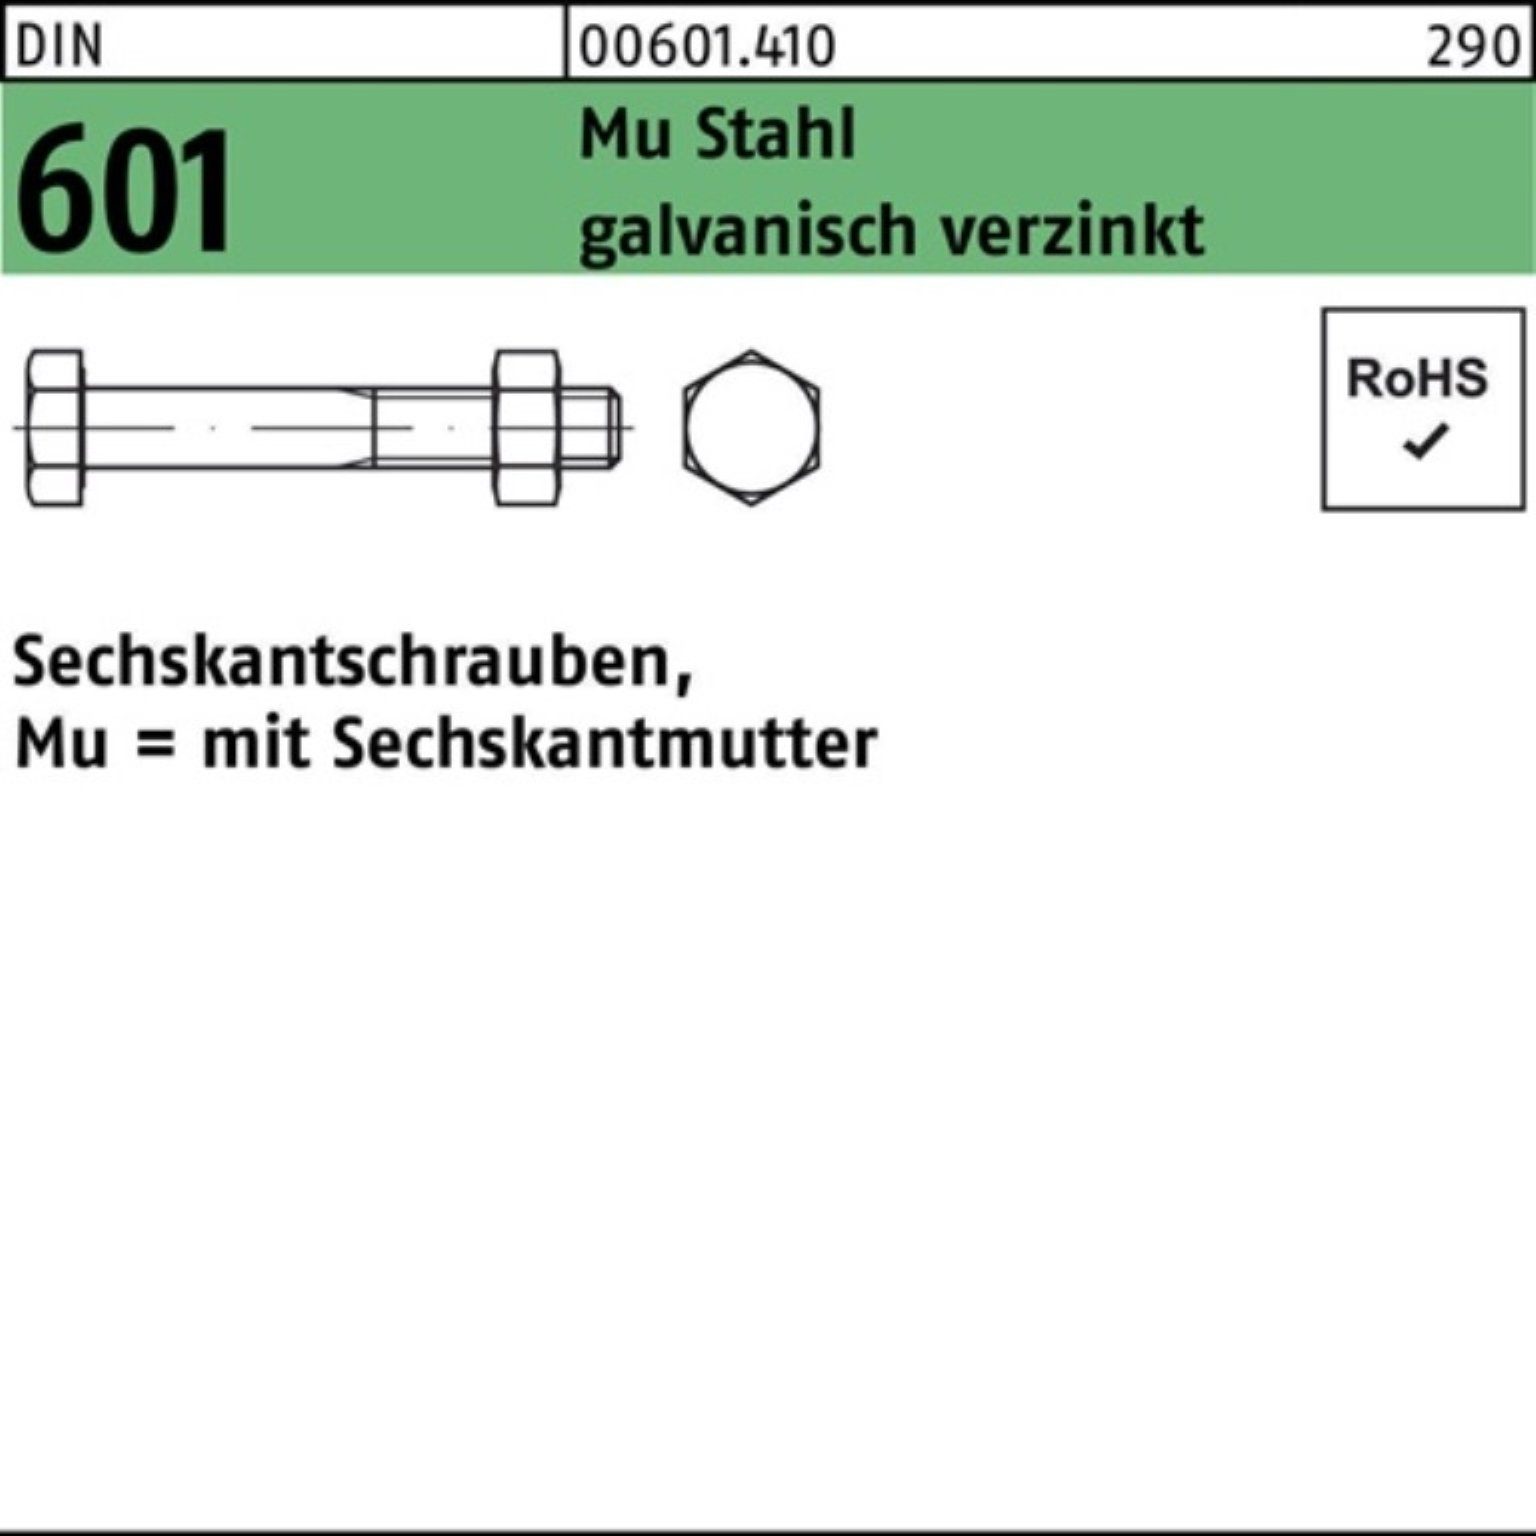 Reyher Sechskantmutter 200er Pack Sechskantschraube DIN 601 Sechskantmutter M8x30 Mu Stahl 4.